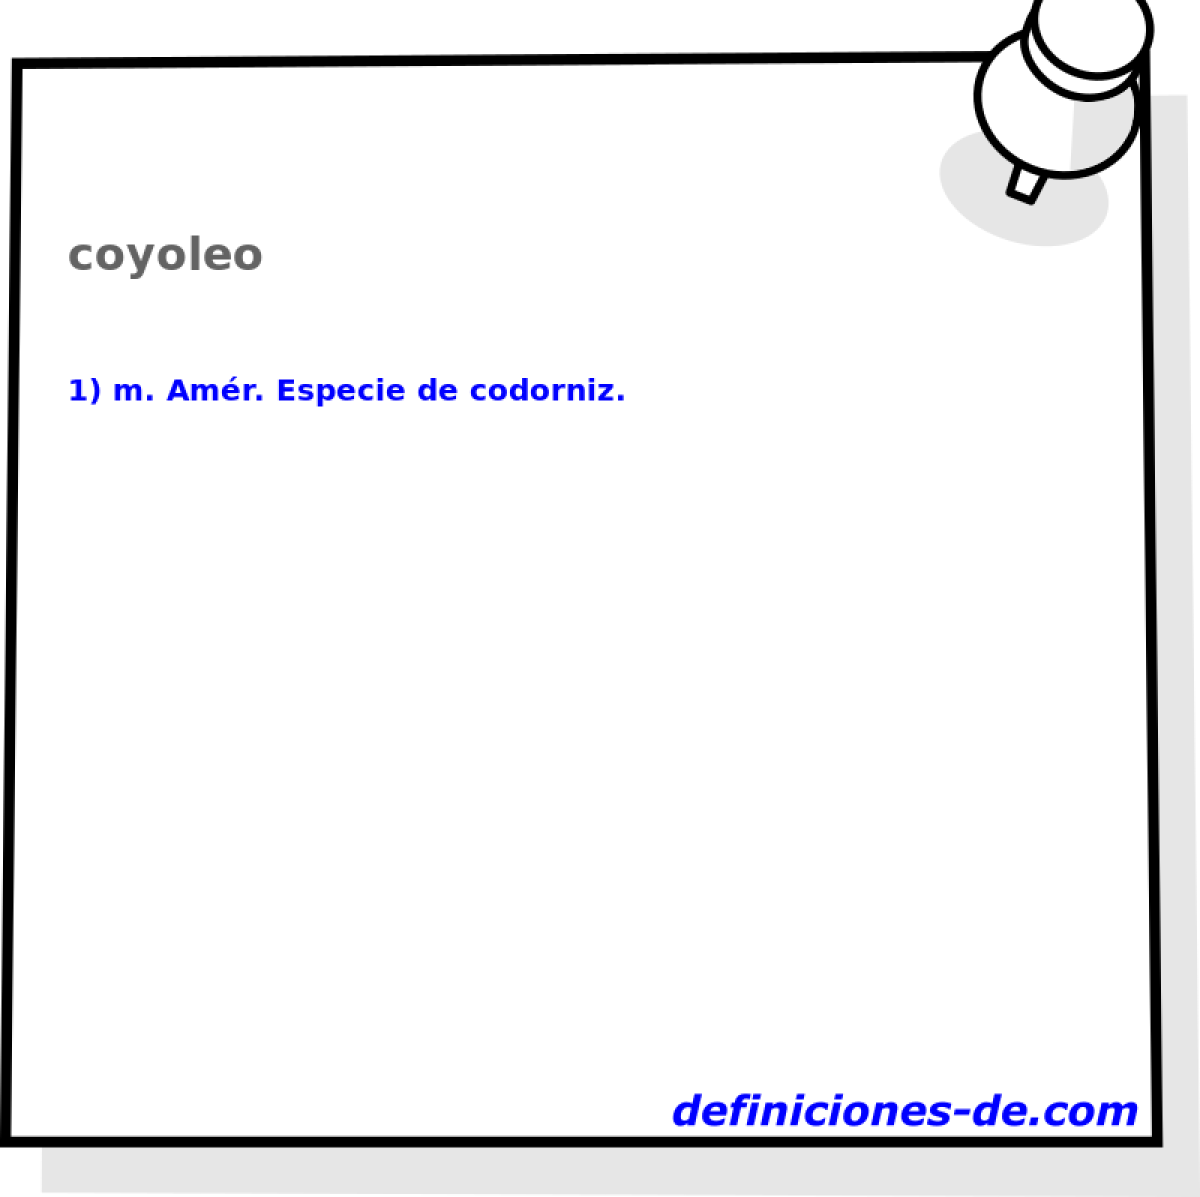 coyoleo 